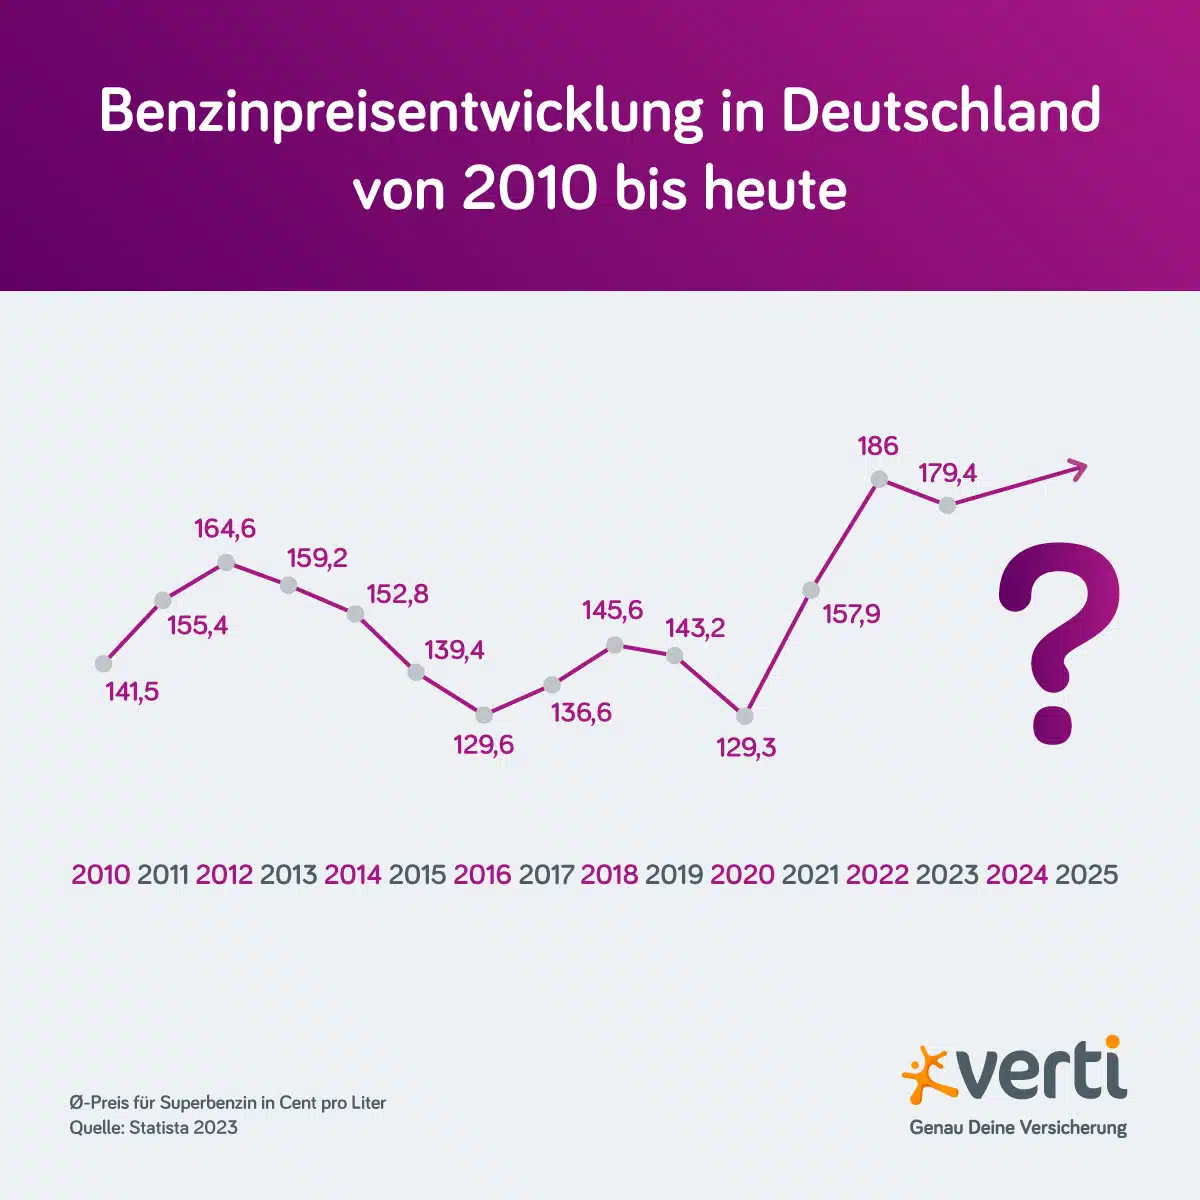 Benzinpreisentwicklung in Deutschland